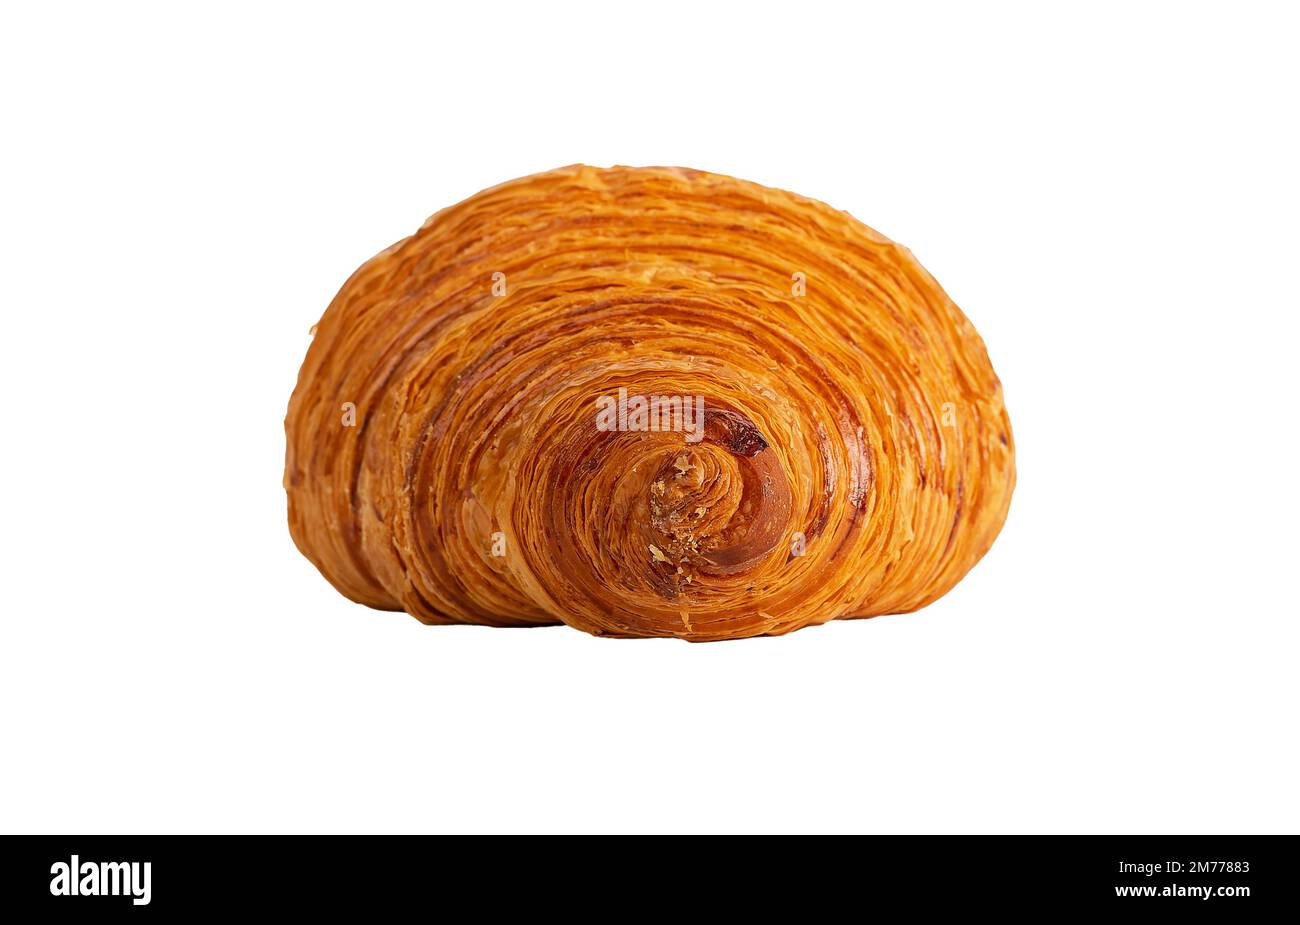 Croissant al forno francese, panetteria con pasta dolce fresca, panino isolato su fondo bianco. Foto di alta qualità Foto Stock